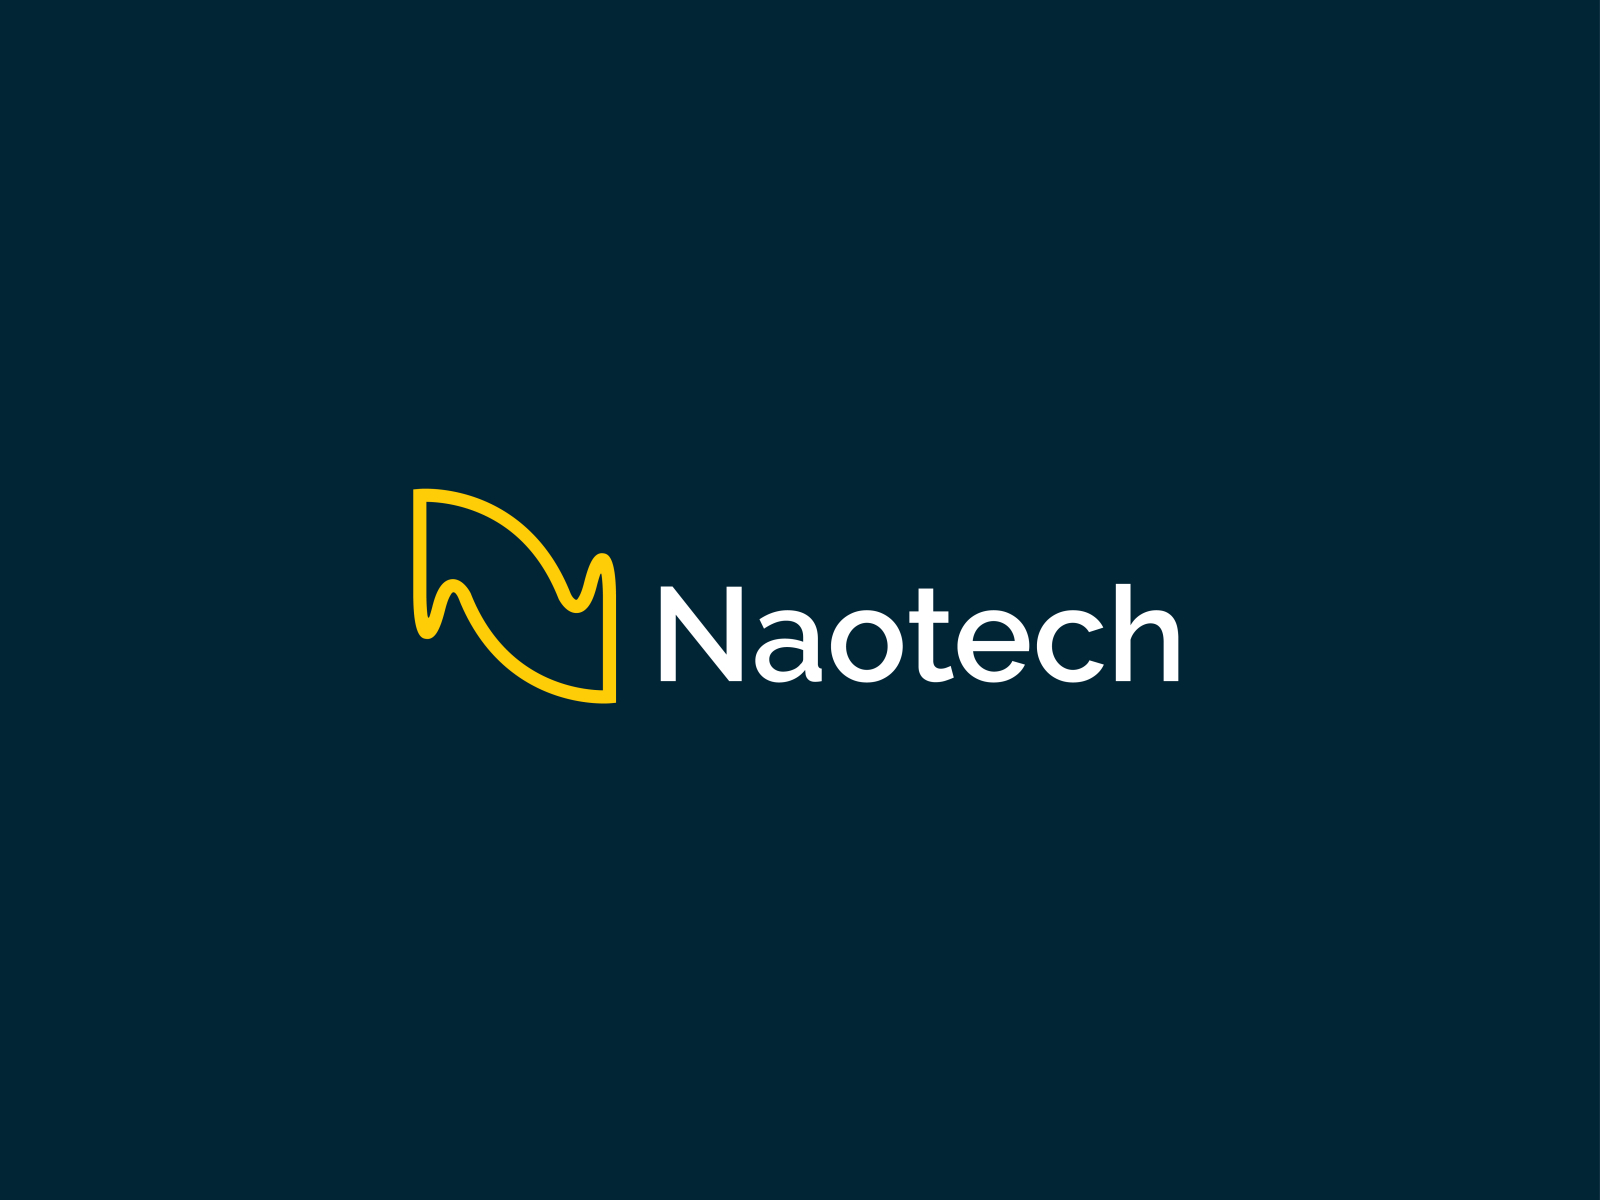 naotech logo by Abu Nayem Bipul on Dribbble